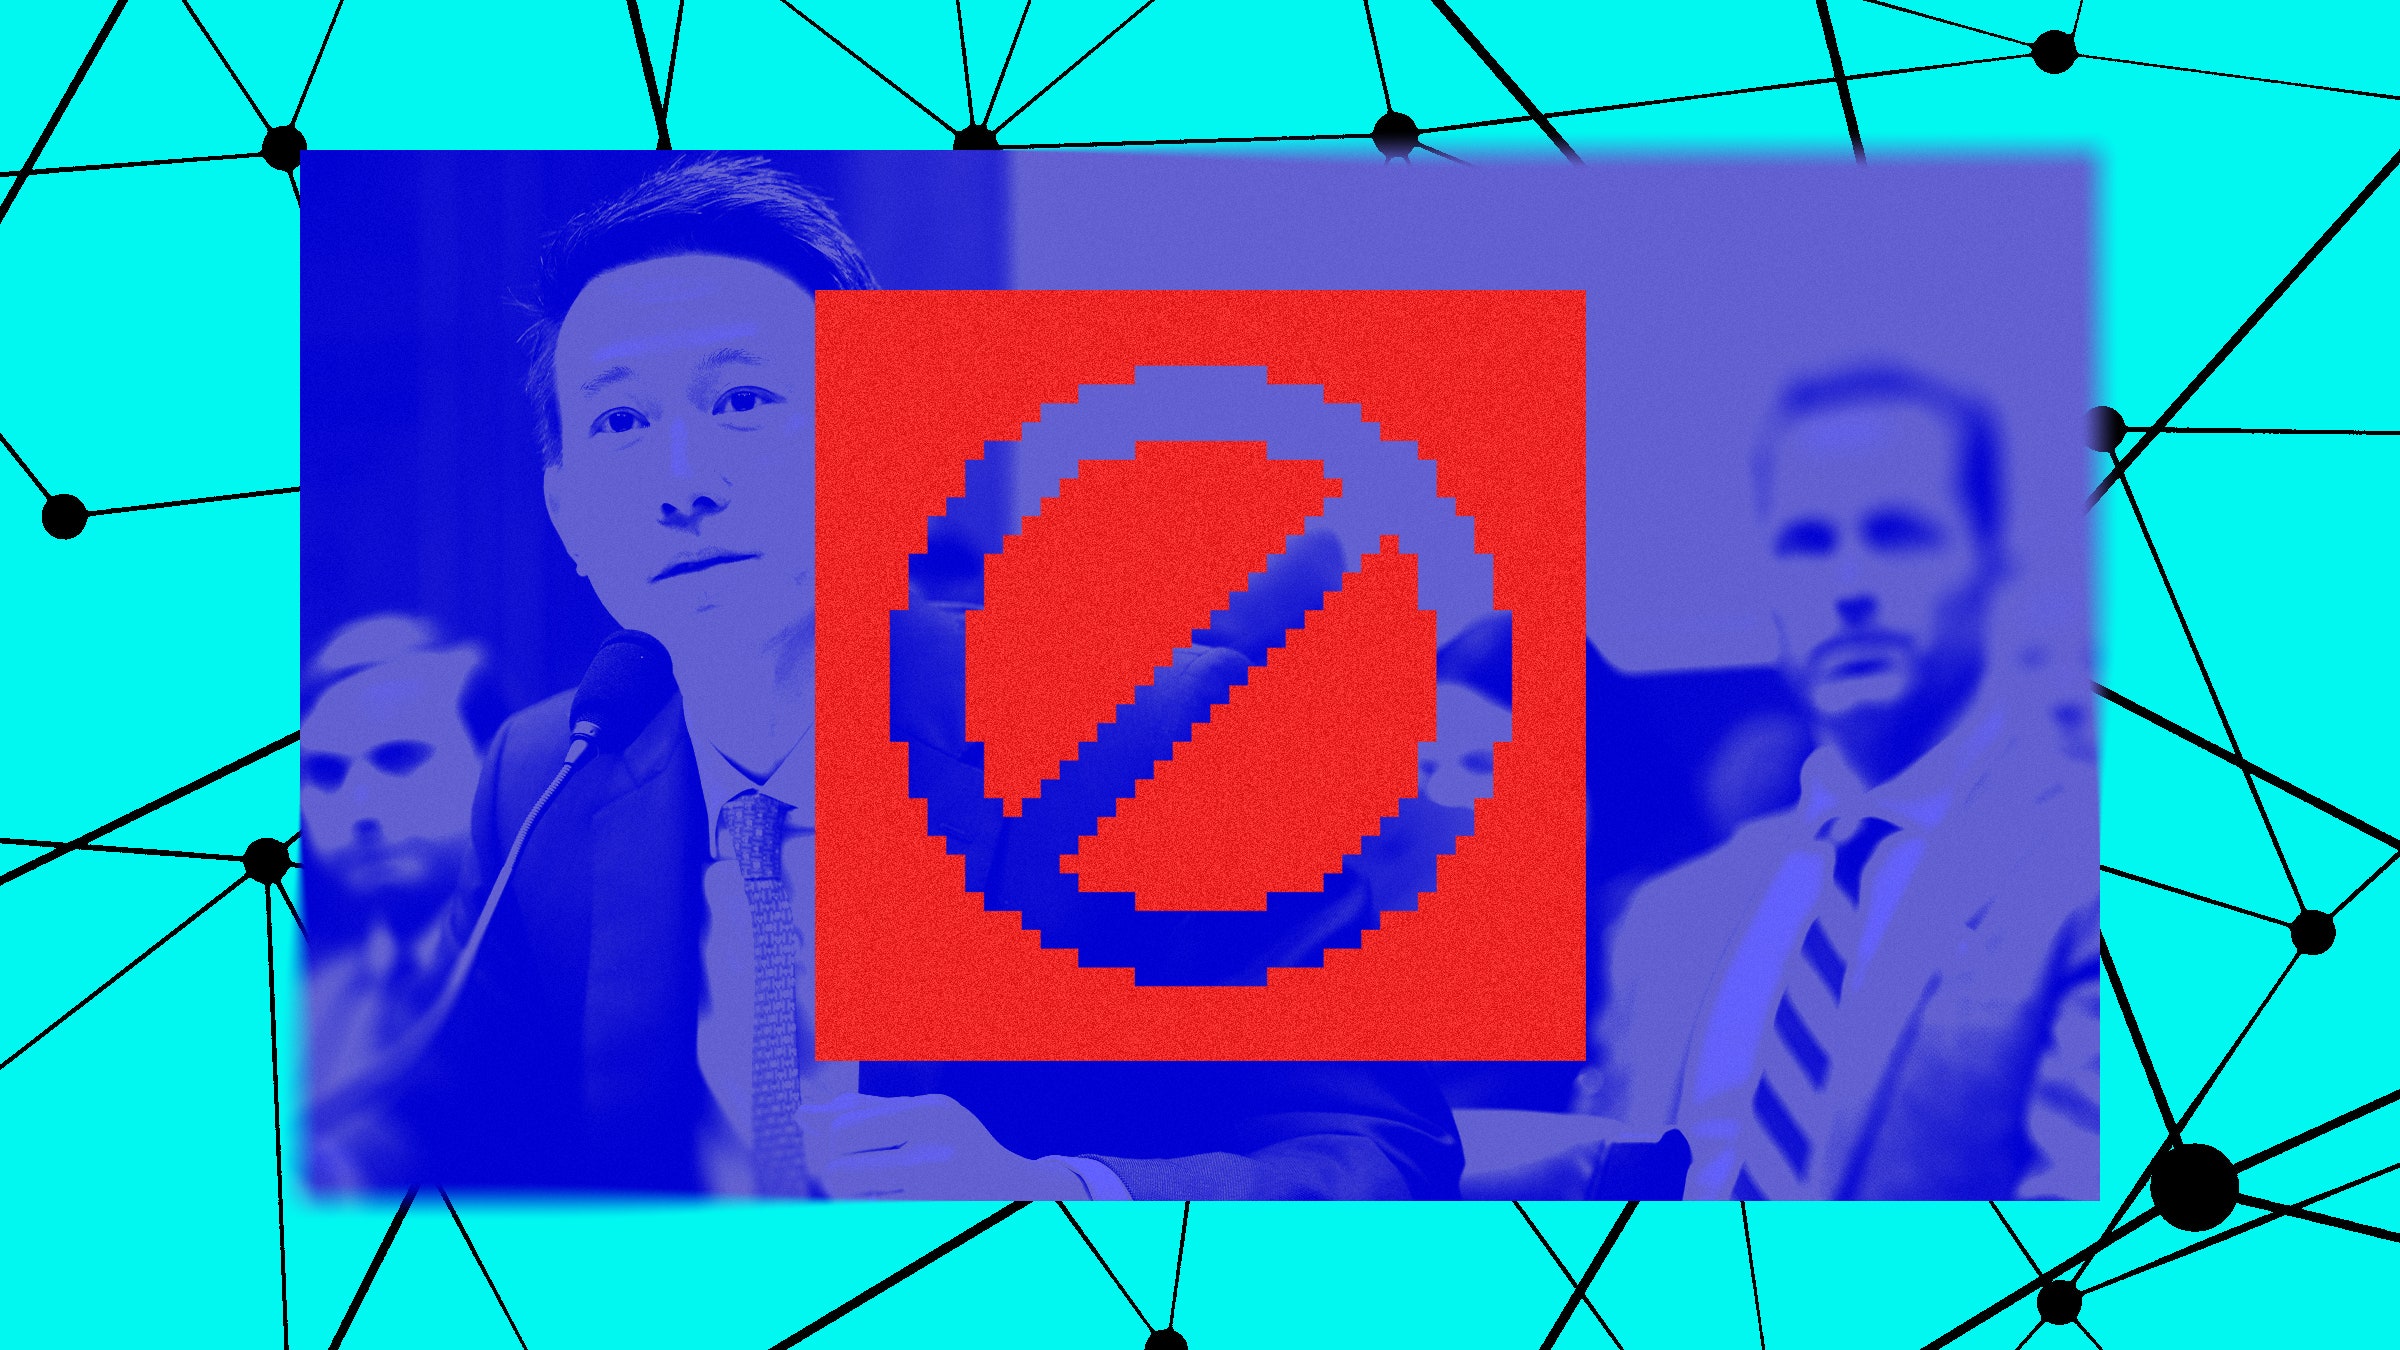 Colagem de fotos da textura da rede Shou Zi Chew em frente ao Congresso e símbolo proibido